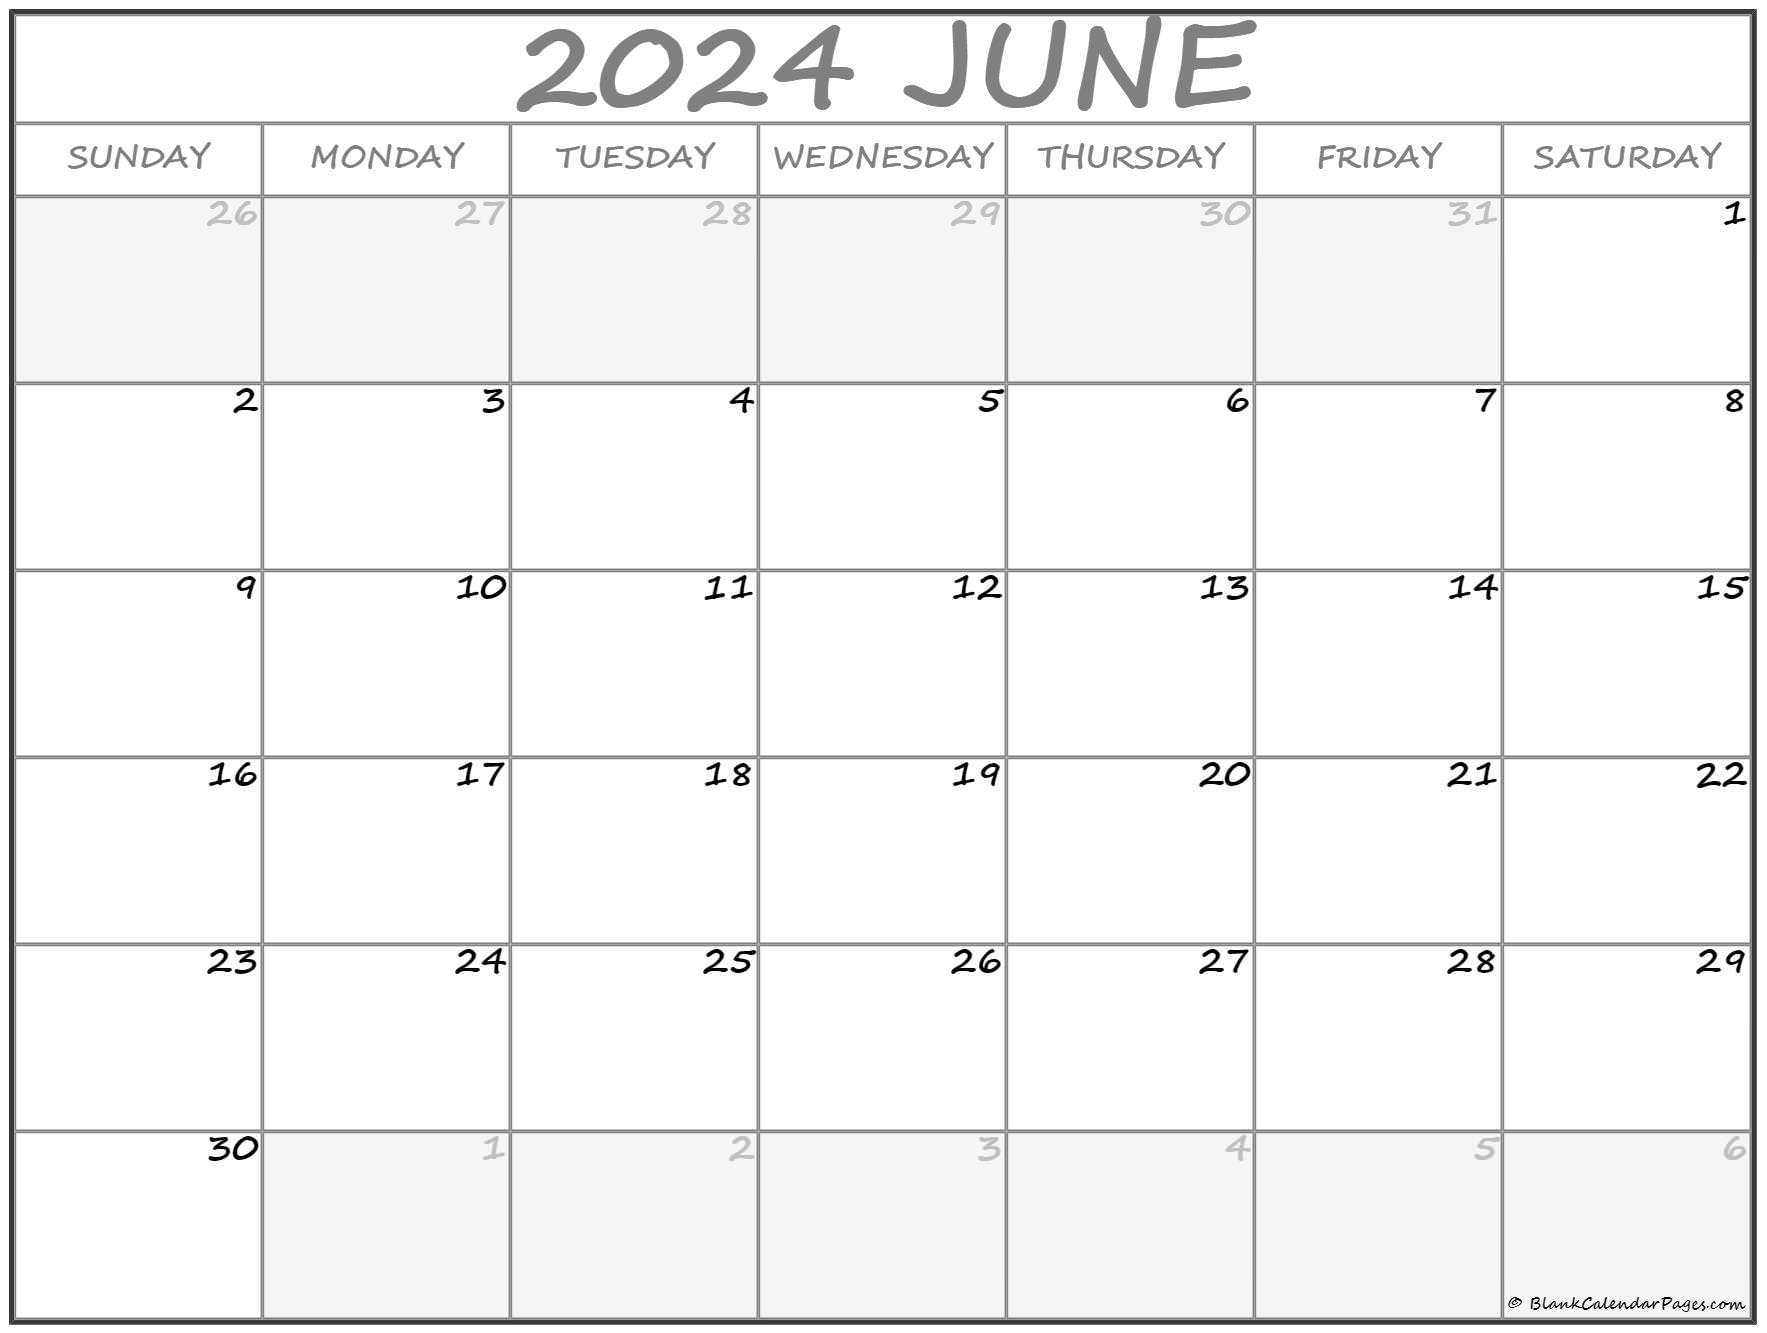 Когда делать операции по лунному календарю 2024. Календарь 2024. Страницы календаря на 2024 году. Американский календарь 2024. Календарь 2024 картинки.